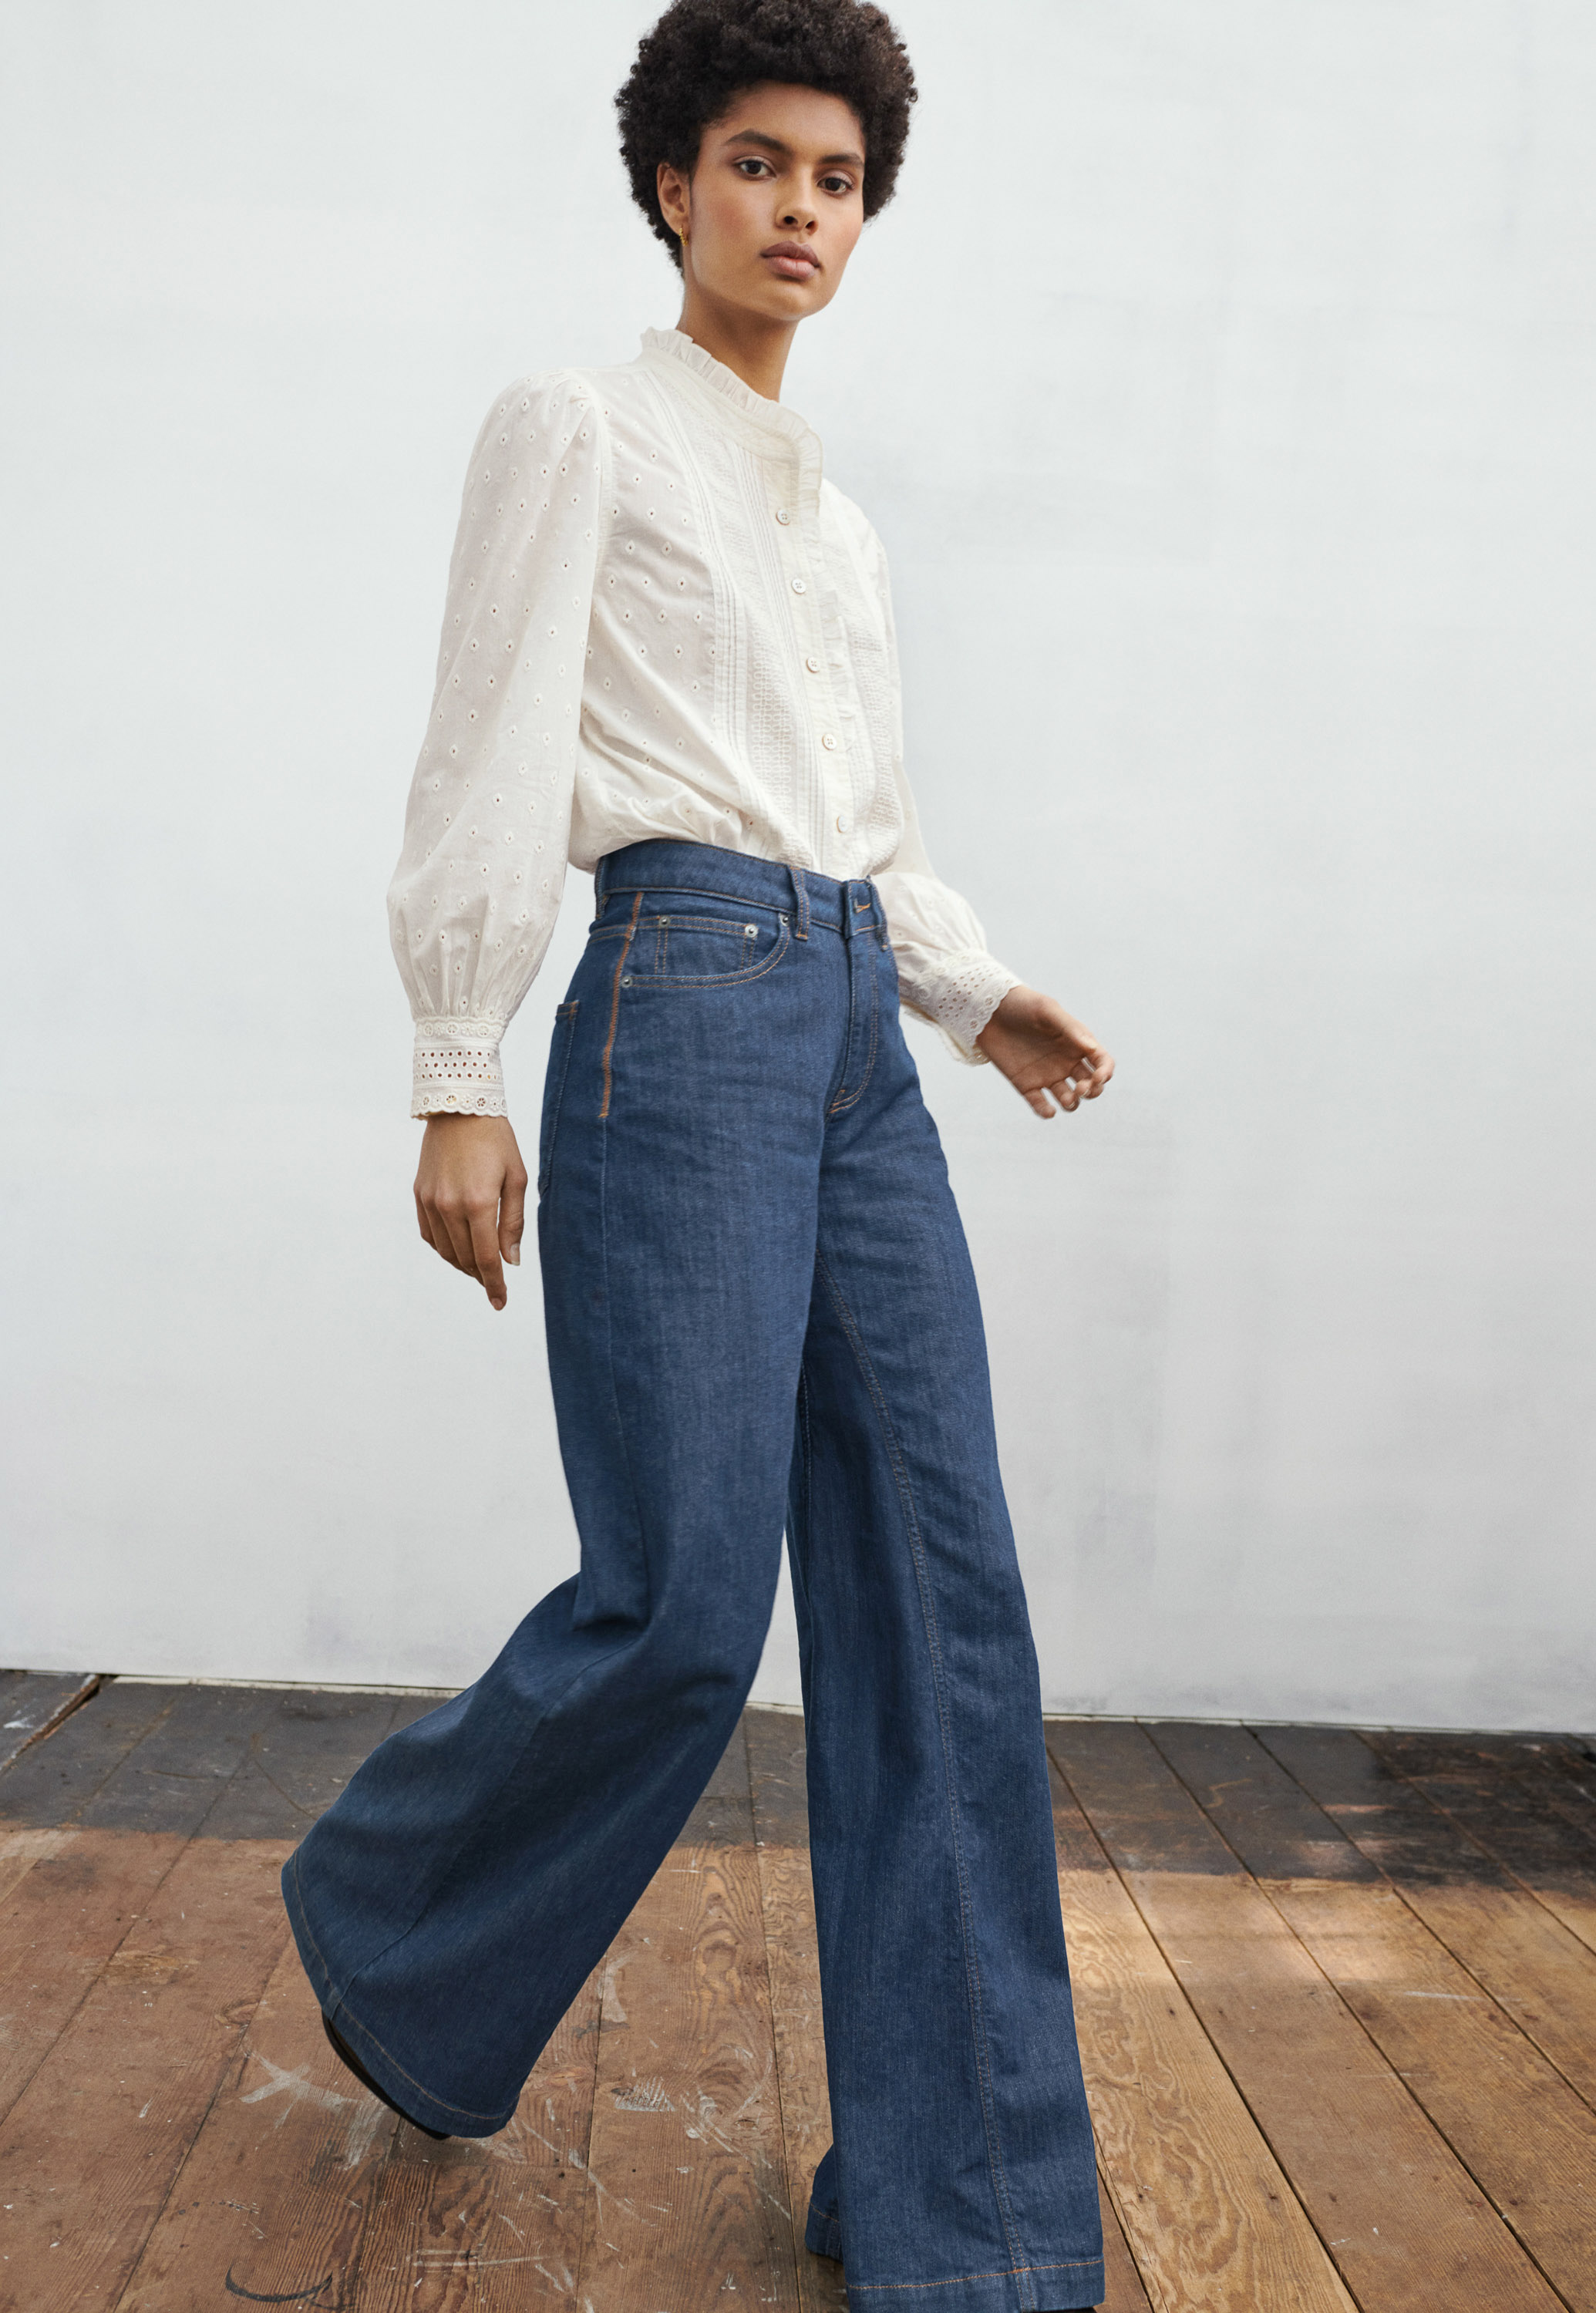 salon Durf tobben jeans top full Goedkoop Online,Up To OFF 67%